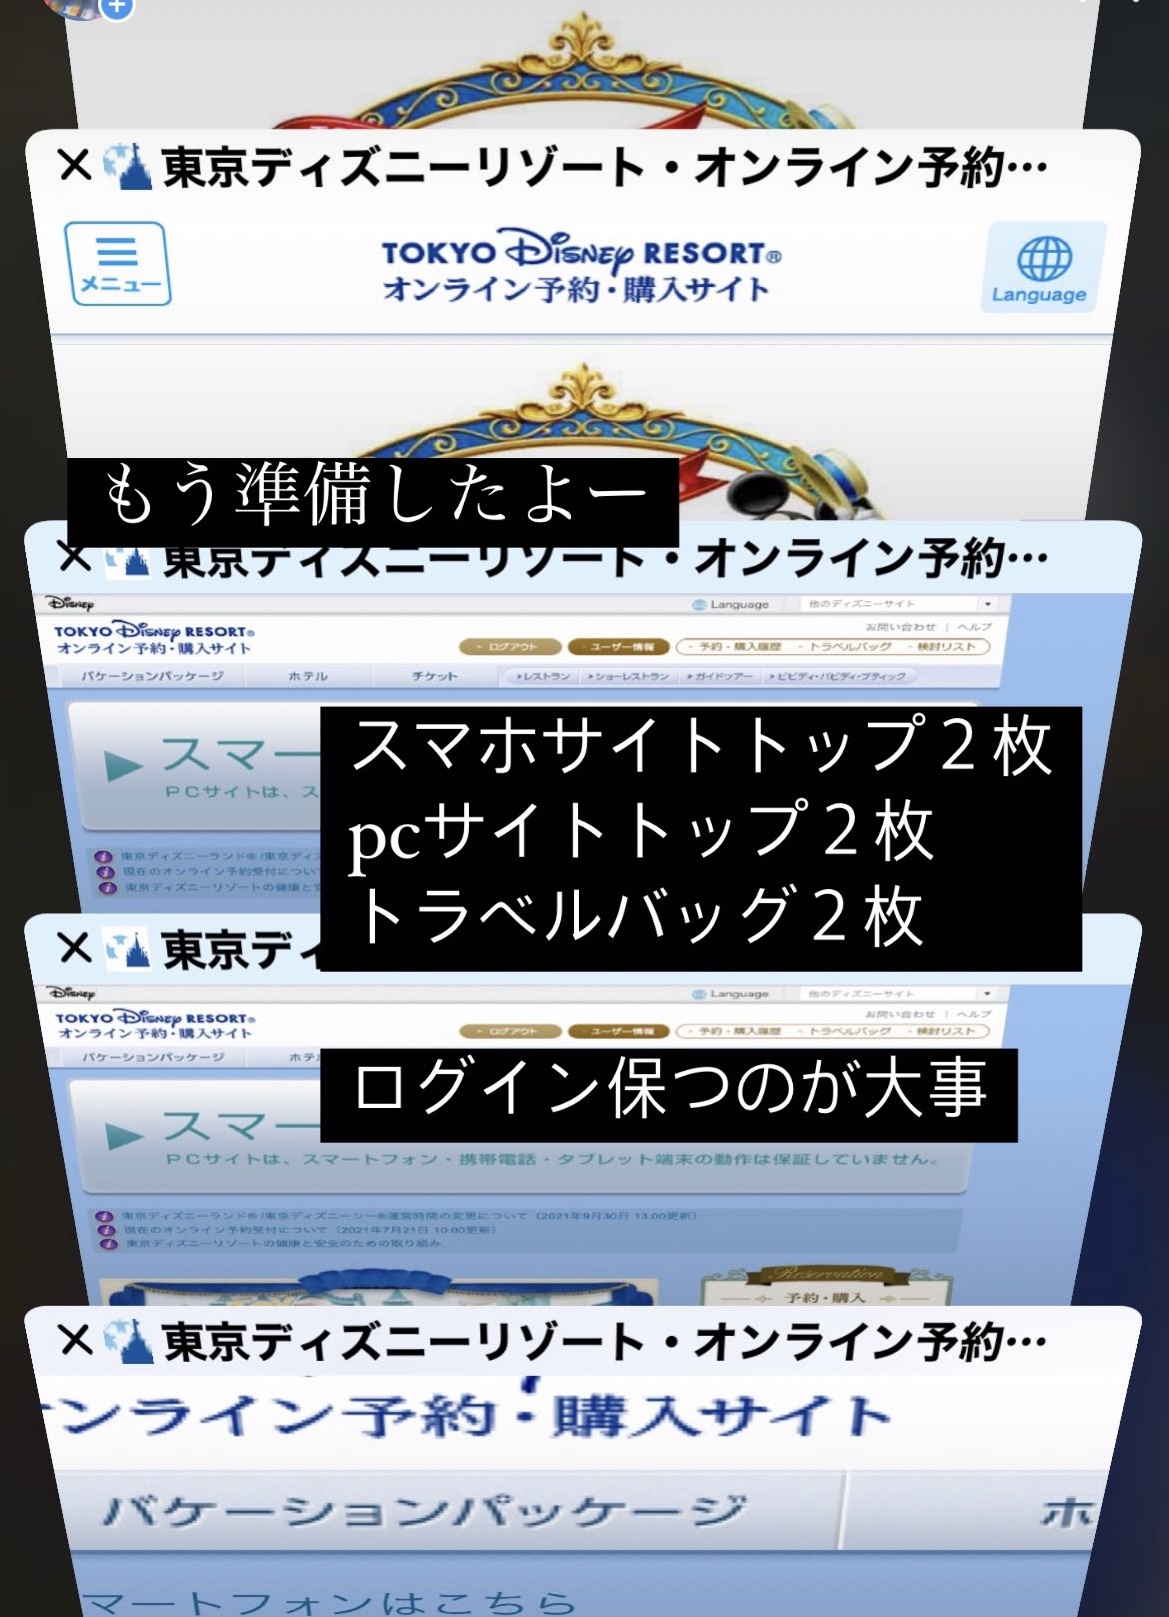 ディズニーパスポート関連 スマホブラウザのログインを簡単に保つ方法 東京ディズニーリポート